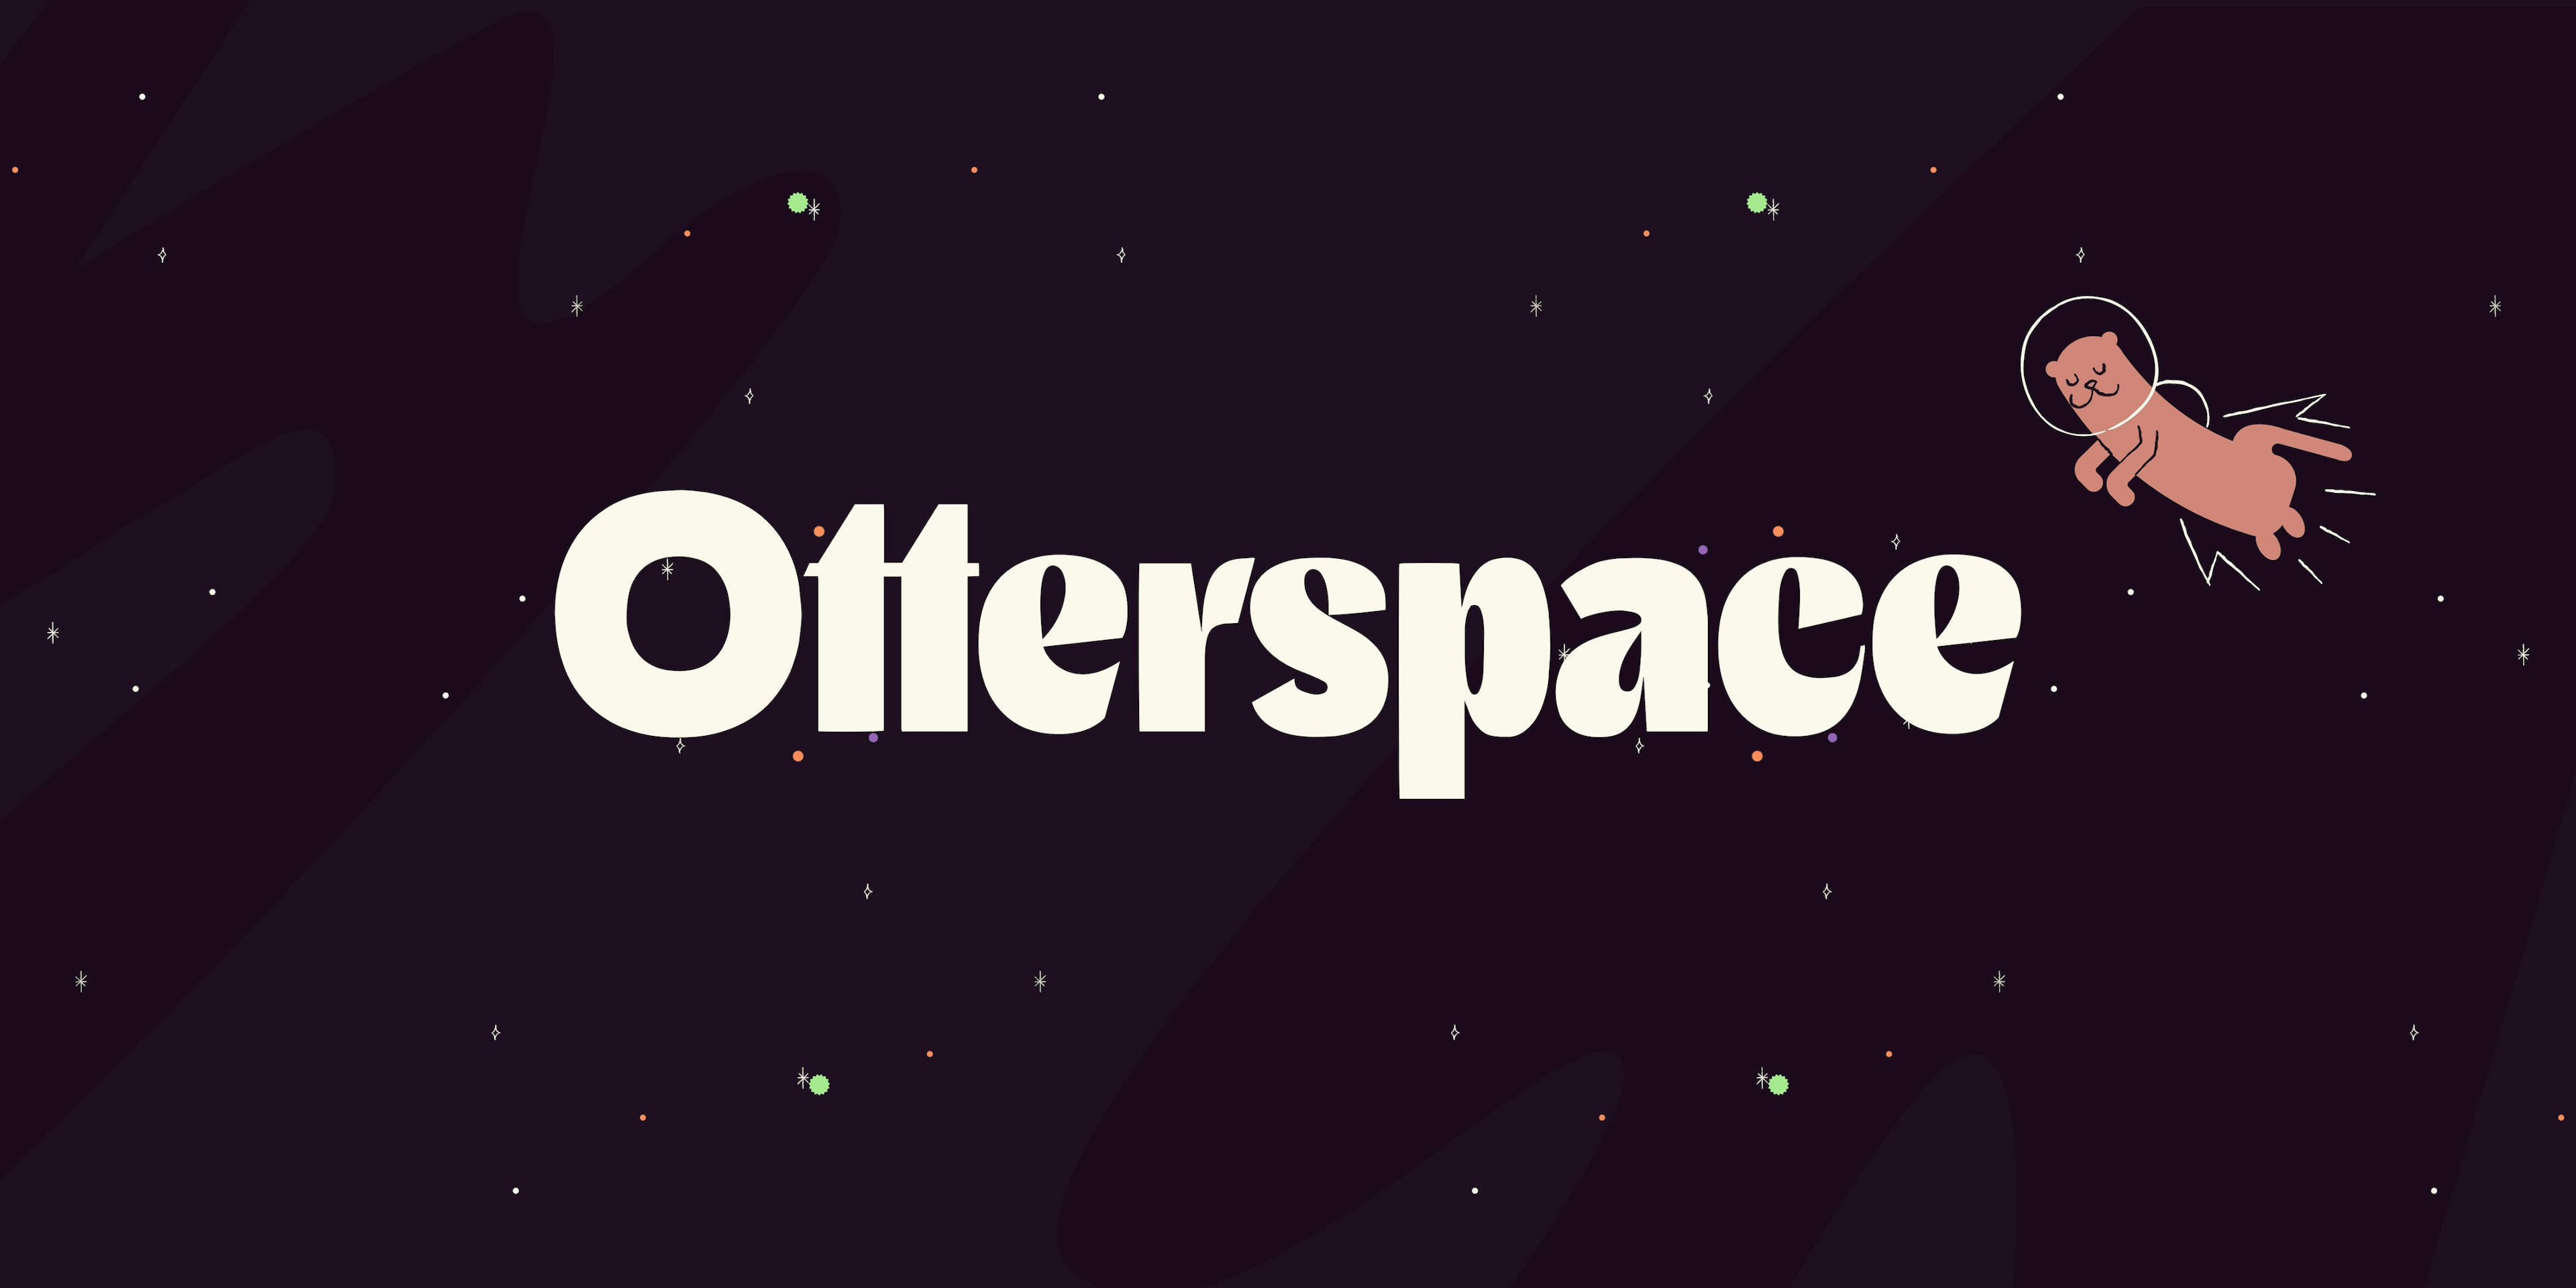 「启动 Otterspace 的下一阶段」题图